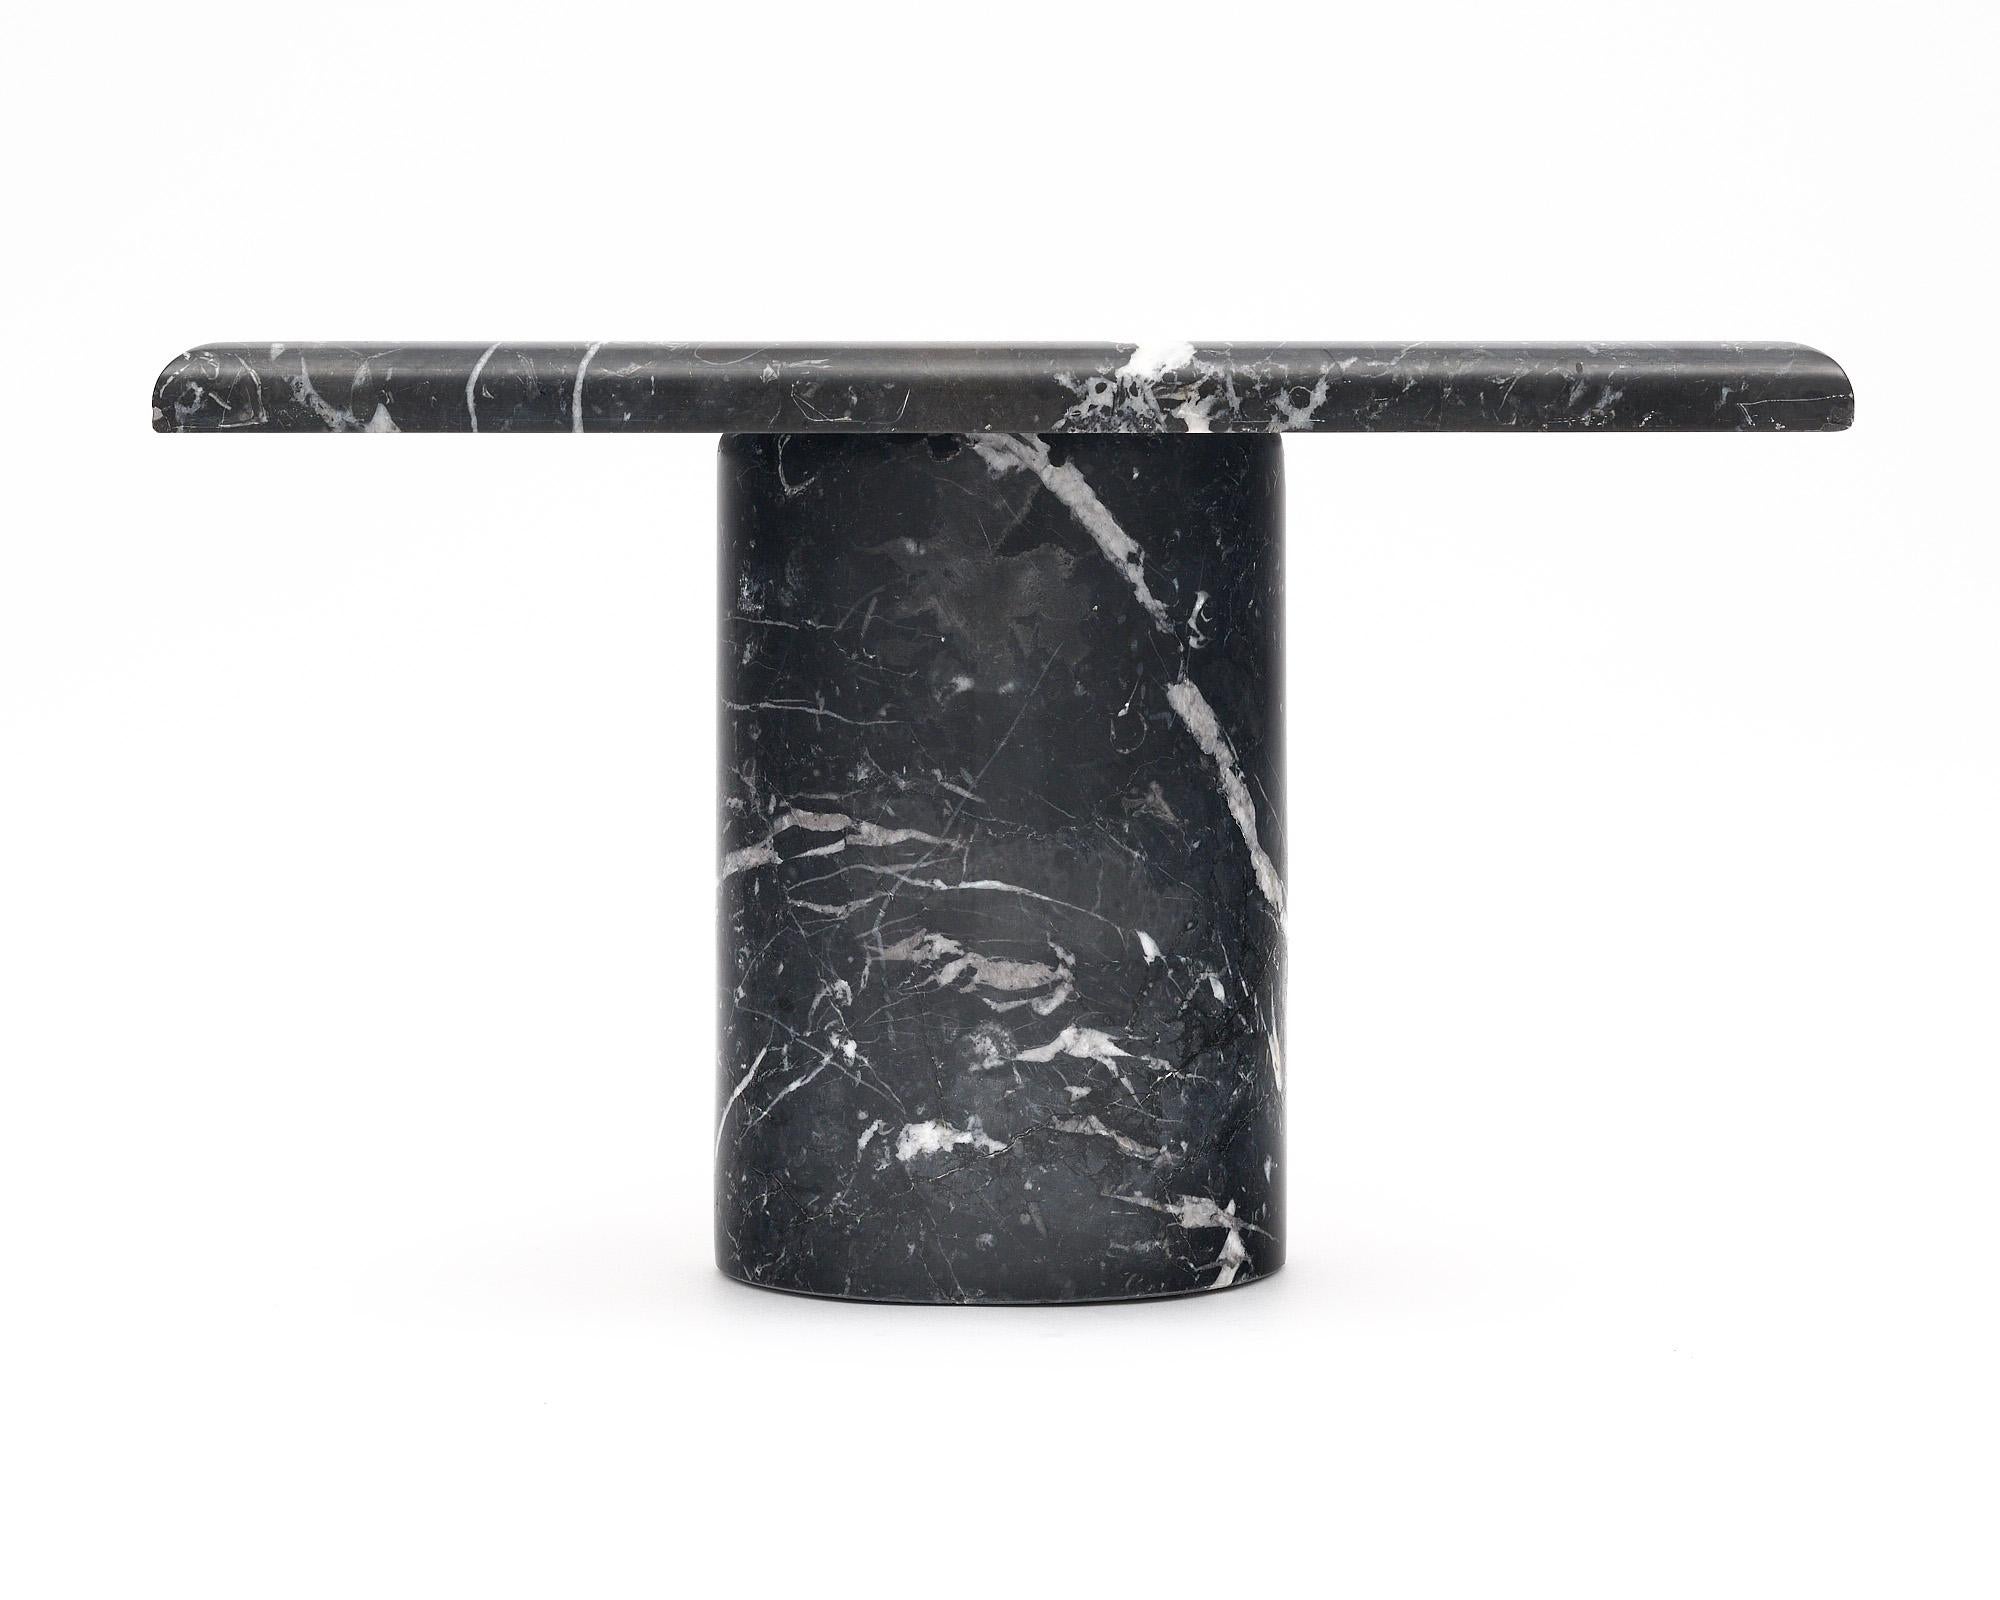 Table d'appoint italienne au design épuré. Cette pièce vintage est entièrement réalisée en marbre noir avec un veinage blanc saisissant. La base cylindrique supporte le plateau carré.
